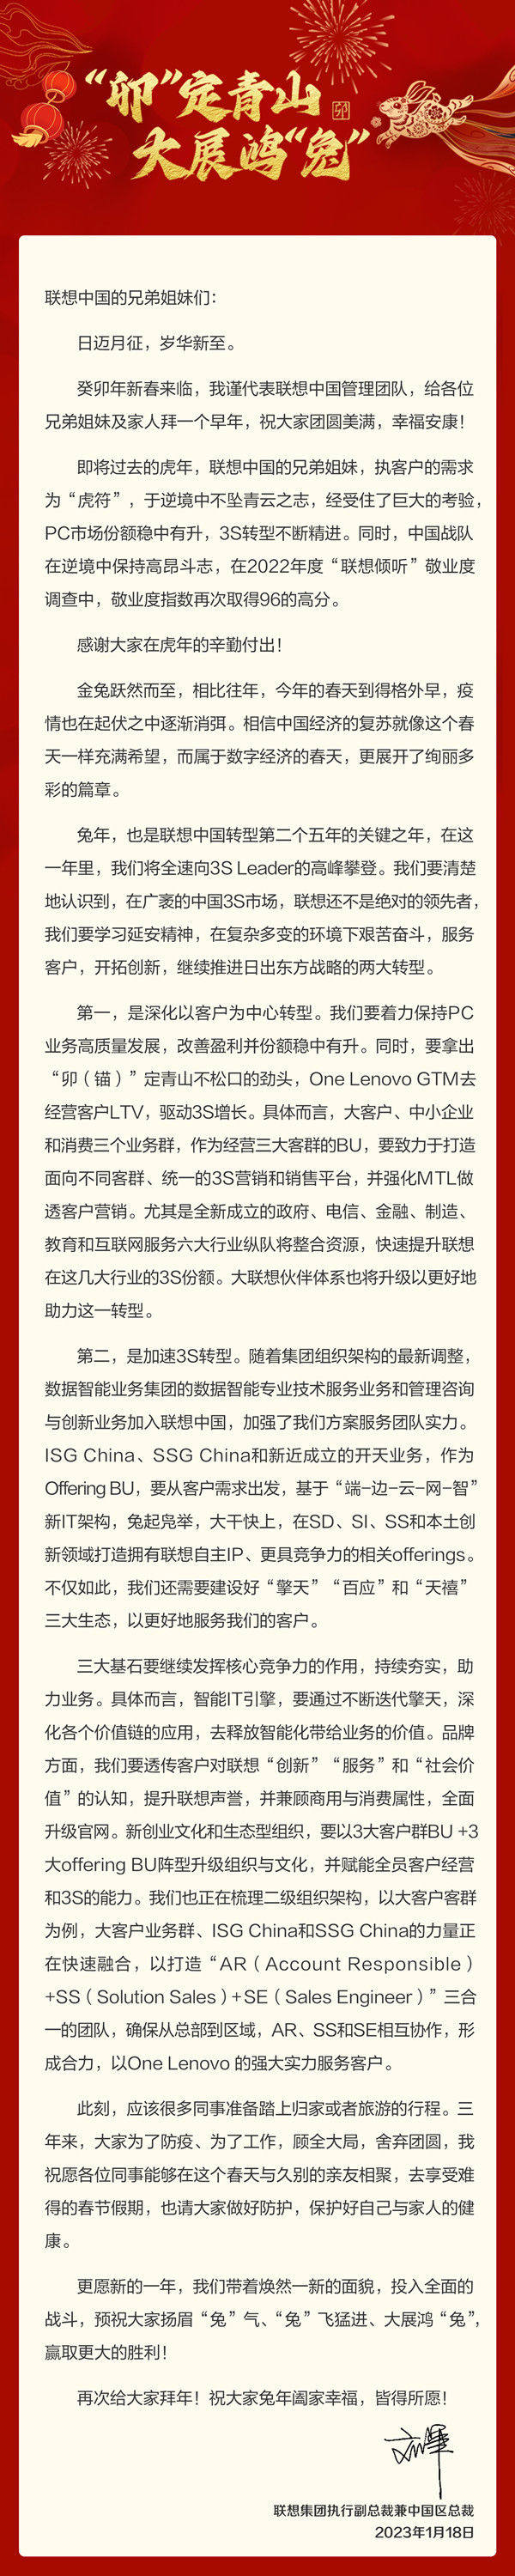 联想中国区总裁发布新春邮件 宣布多个重大内部变动